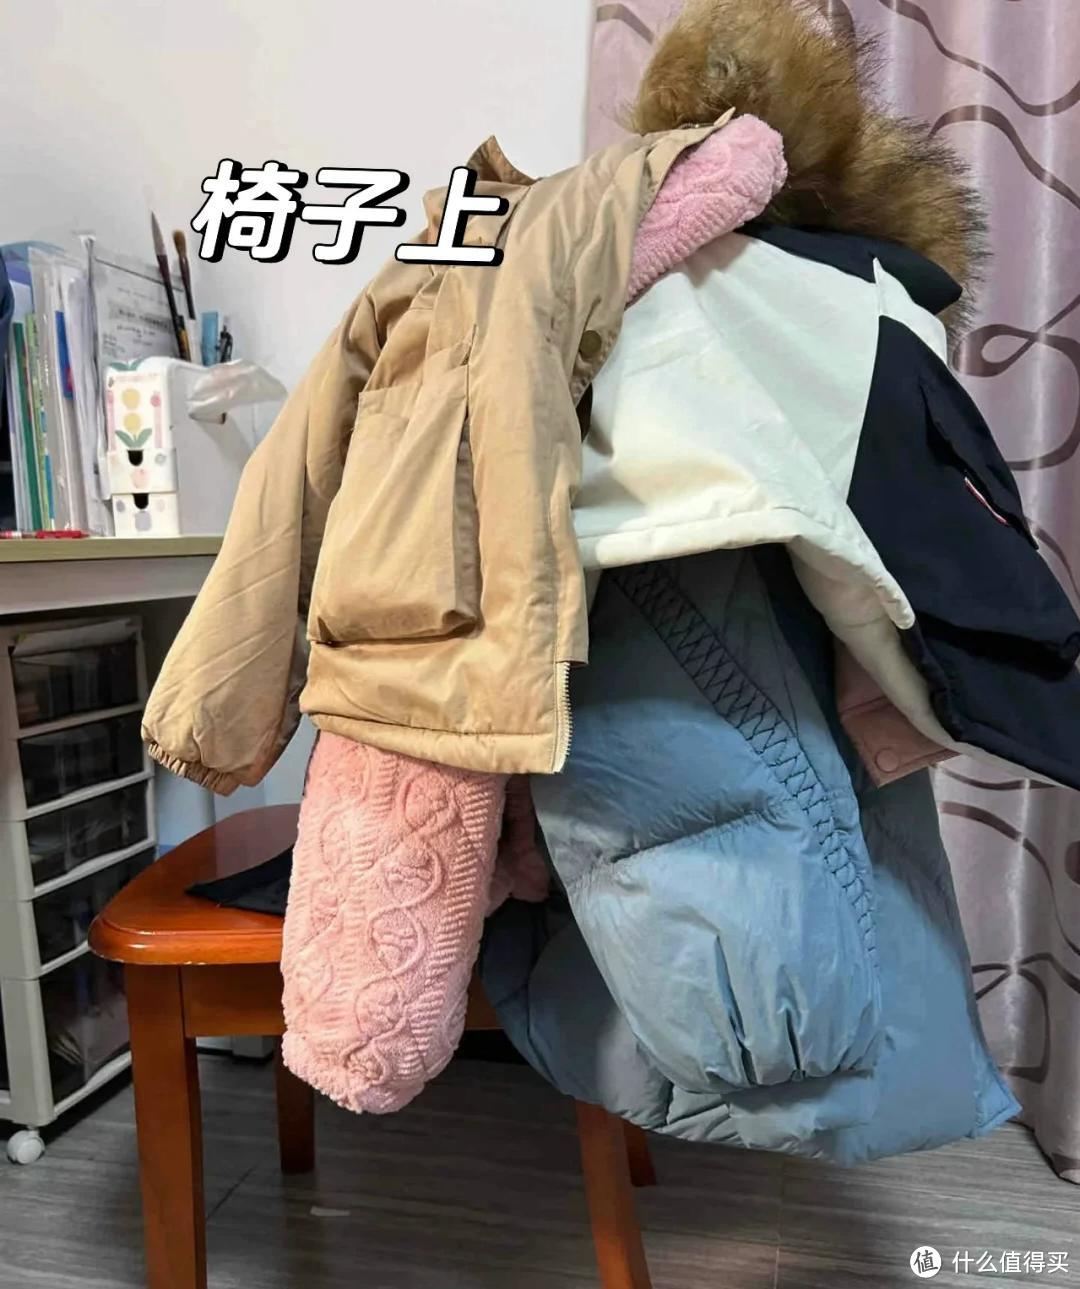 回家后衣服放哪里？别再扔沙发上了！学学日本人做法，干净又整洁